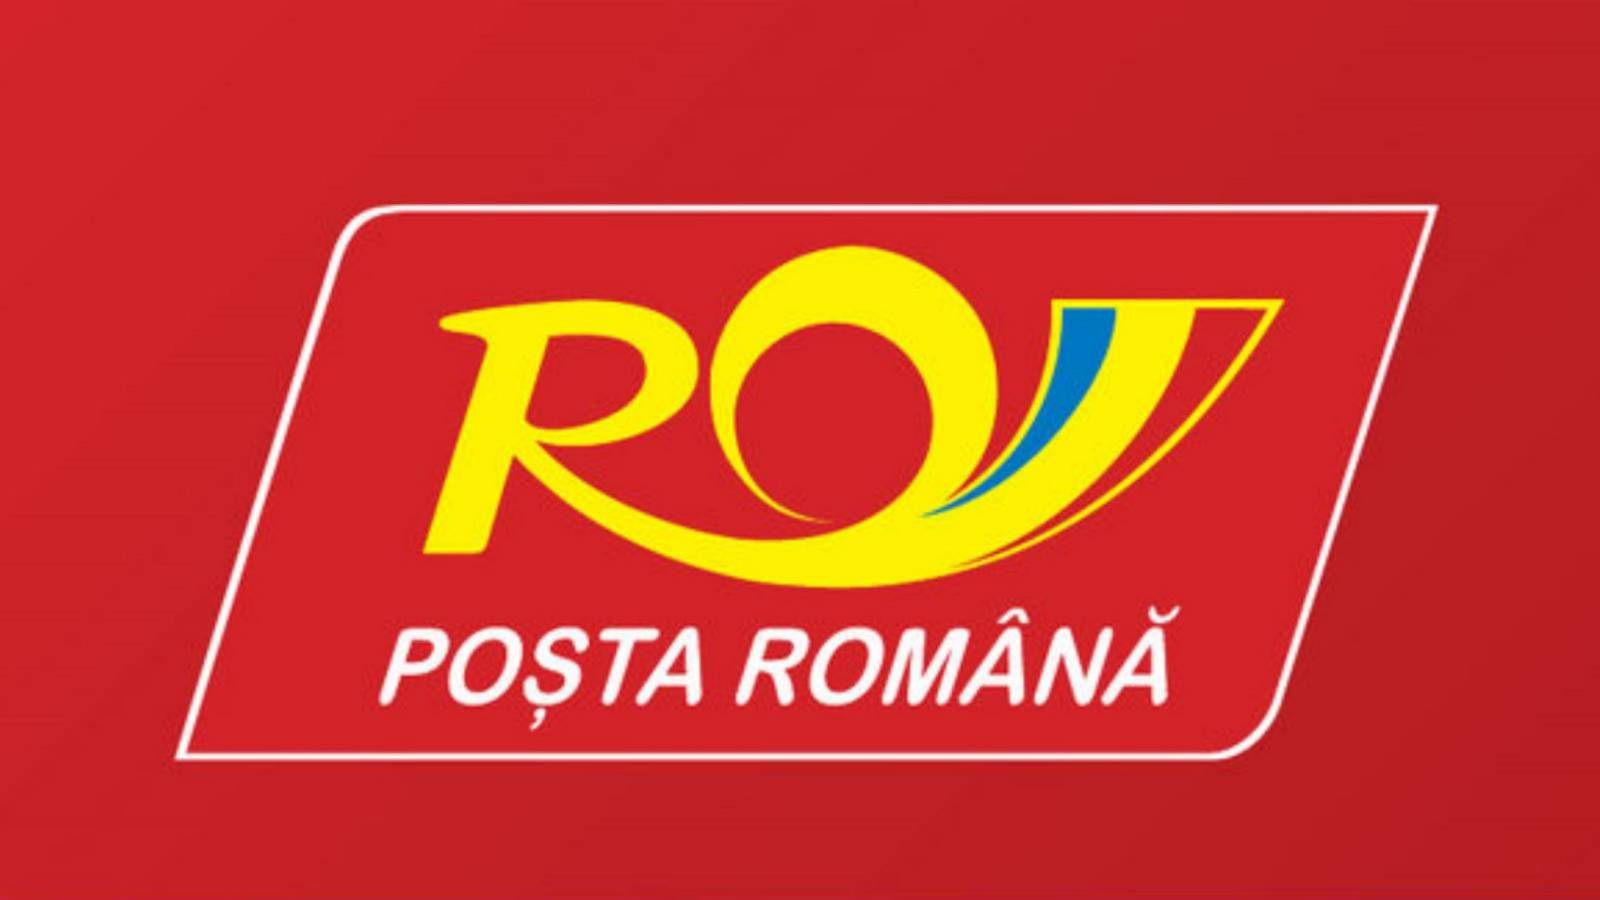 Roemeense post Hoe weet u hoeveel het kost om pakketten te verzenden?